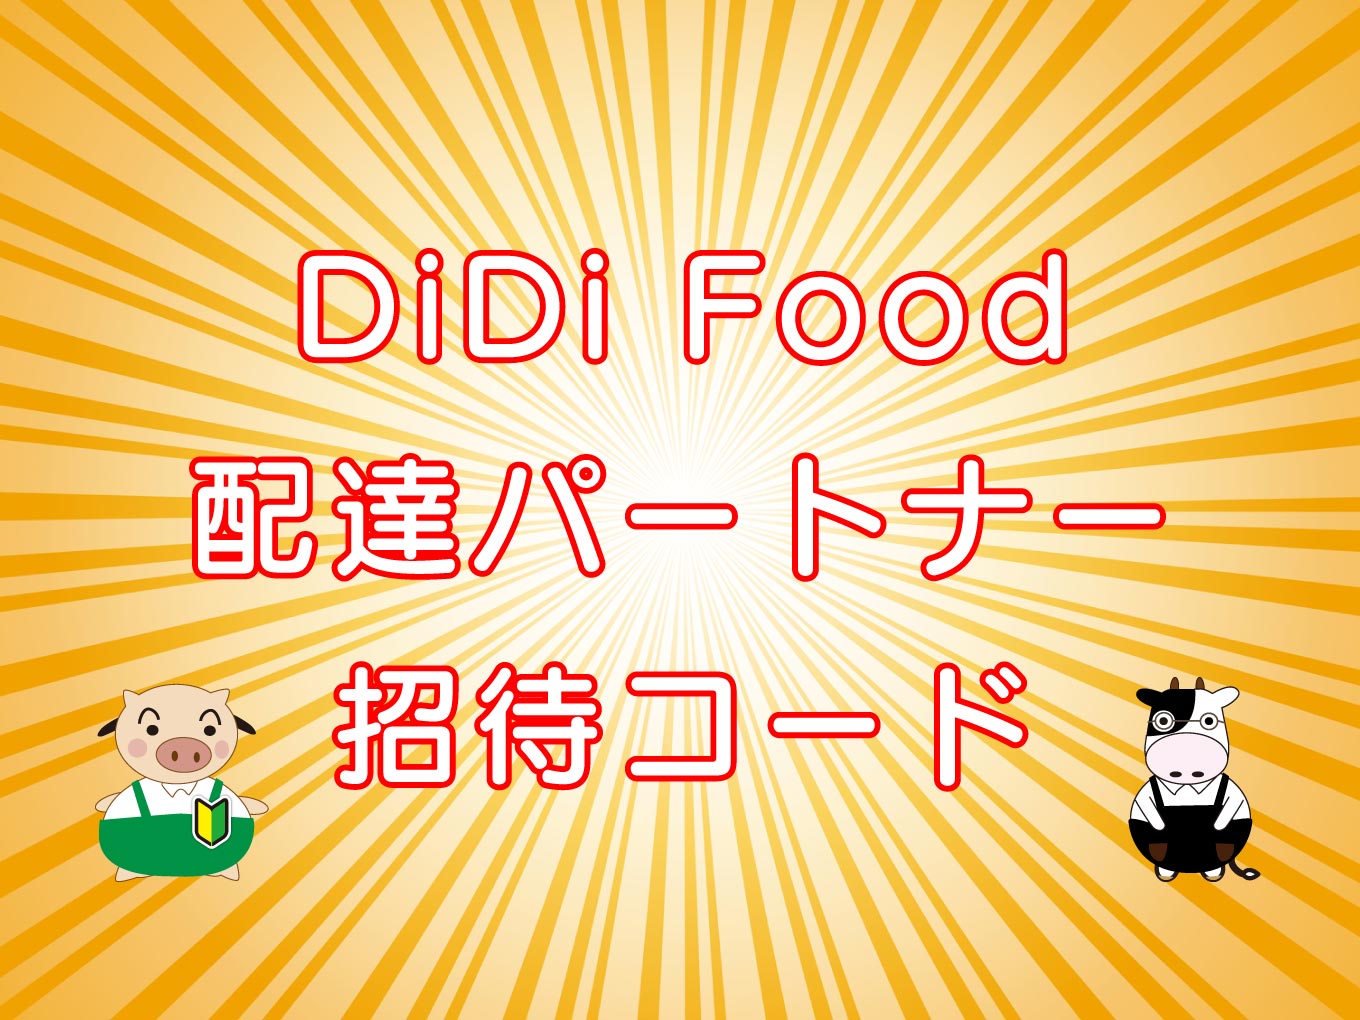 Didi Food ディディフード フードデリバリーの取説